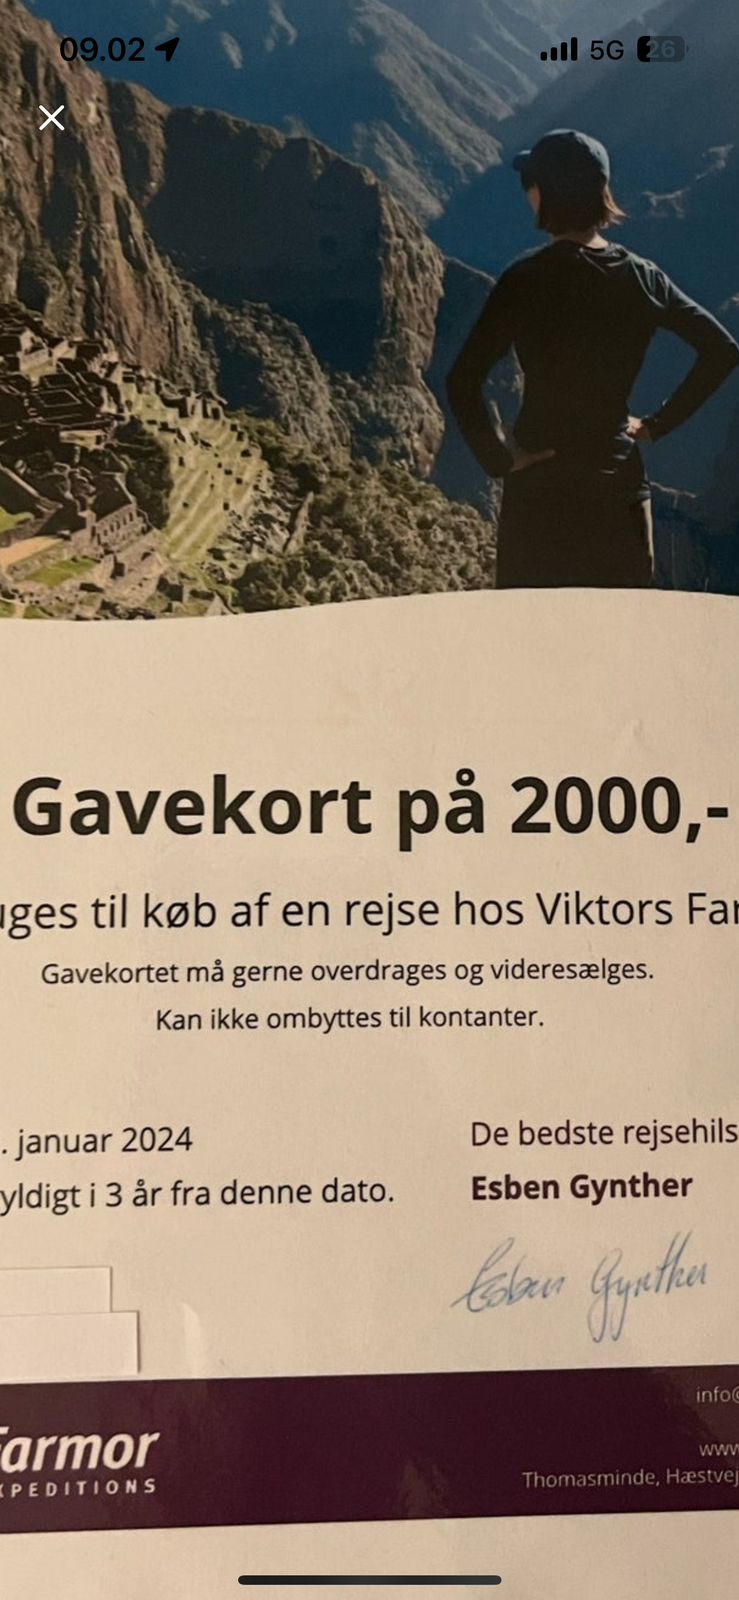 Viktors Farmor rejser Gavekort på 2000 kr

SÆLG...